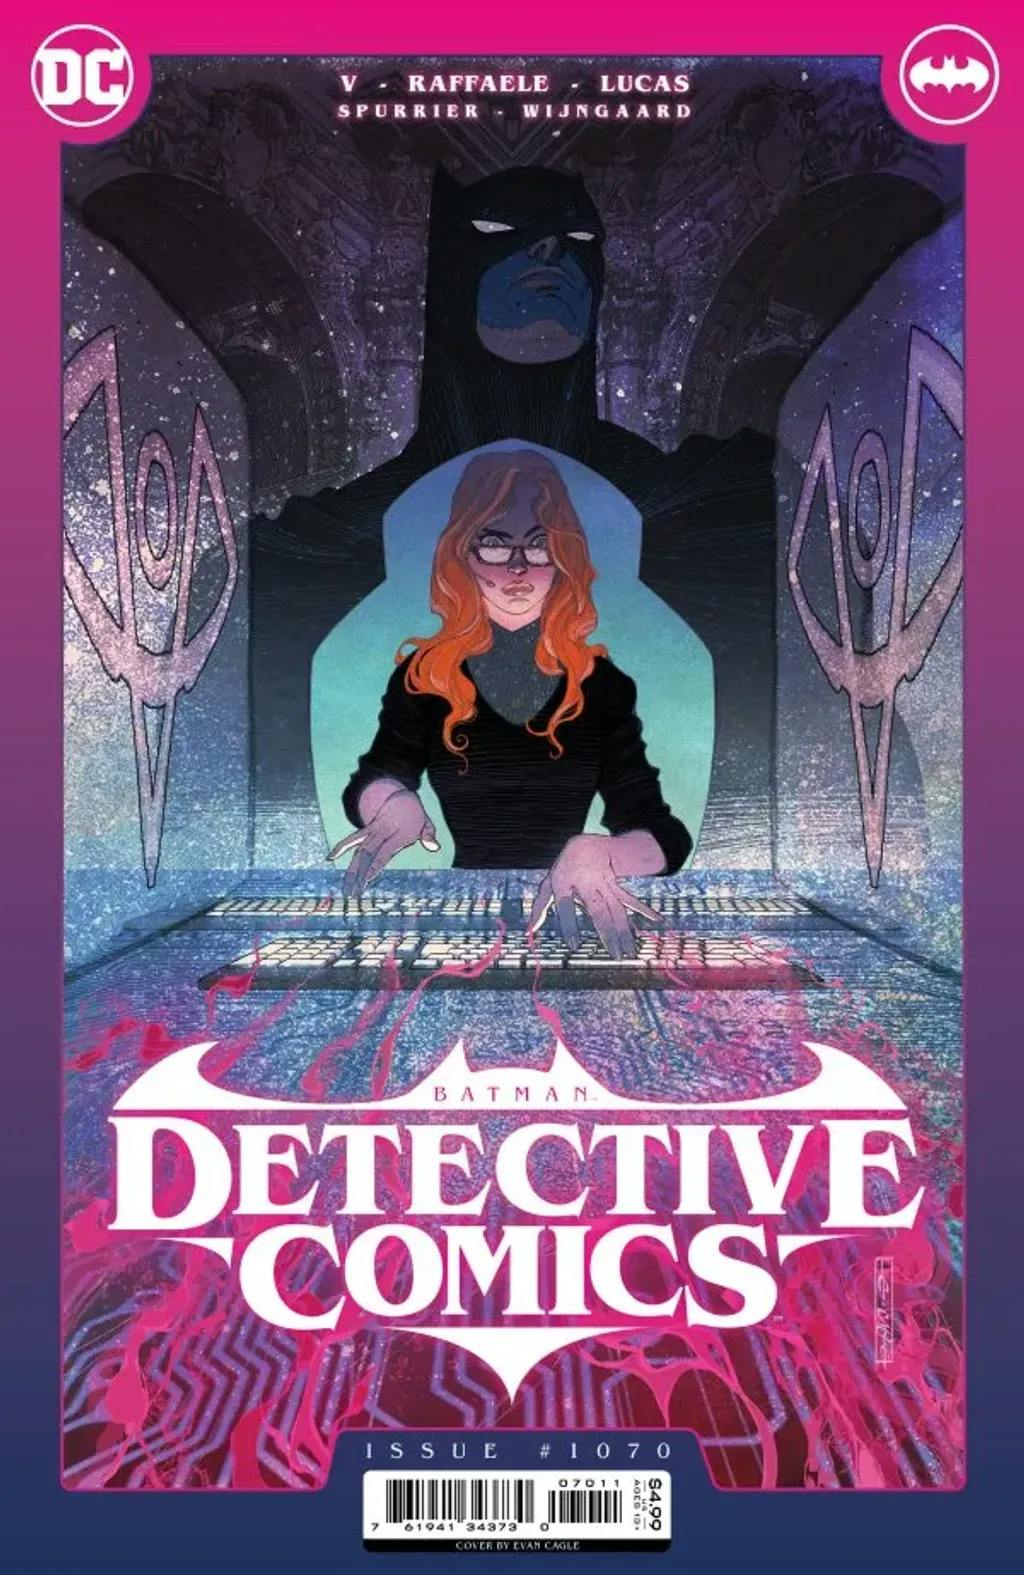 Detective Comics #1070 By Si Spurrier, Ram V., Stefano Raffaele, Caspar Wijngaard, and Adriano Lucas